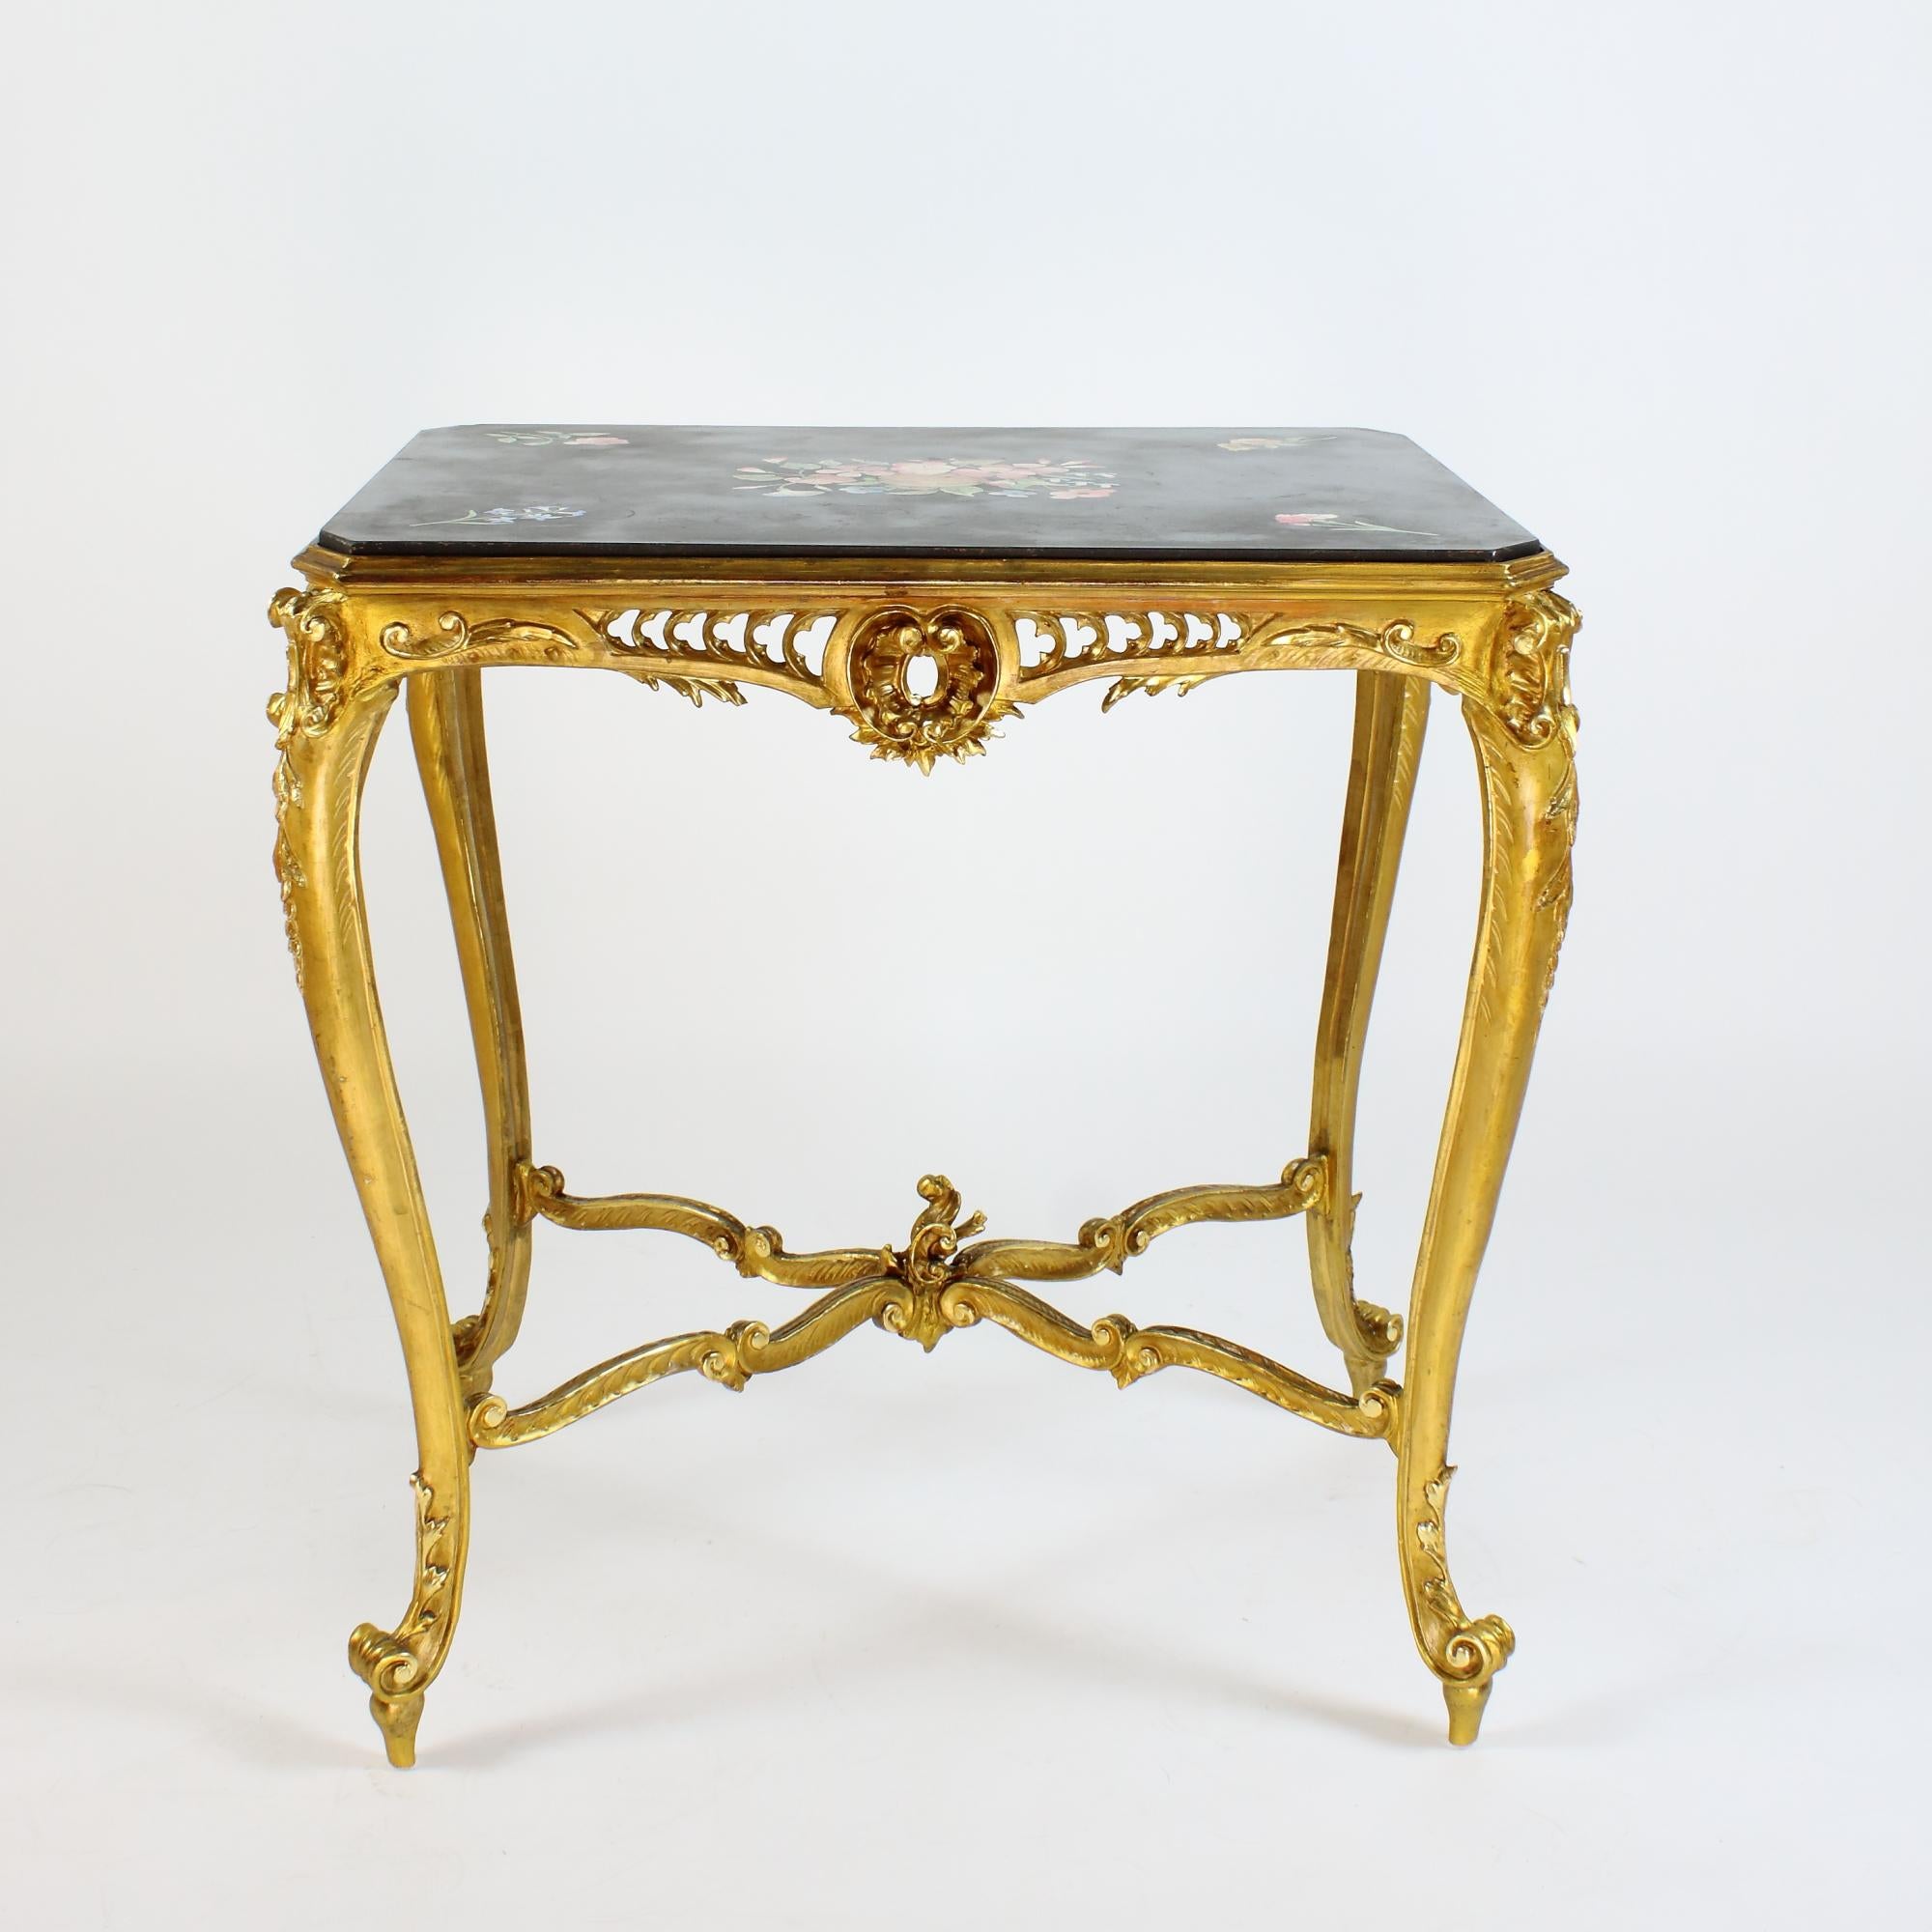 Napoleon III Louis XV Stil vergoldetes Holz scagliola oben Mitte Tisch Desserttisch

Ornamentale, achteckige Tischzarge mit reichem, teilweise durchbrochenem Rocaillendekor im Louis XV-Stil auf vier geschwungenen und sich verjüngenden Beinen mit